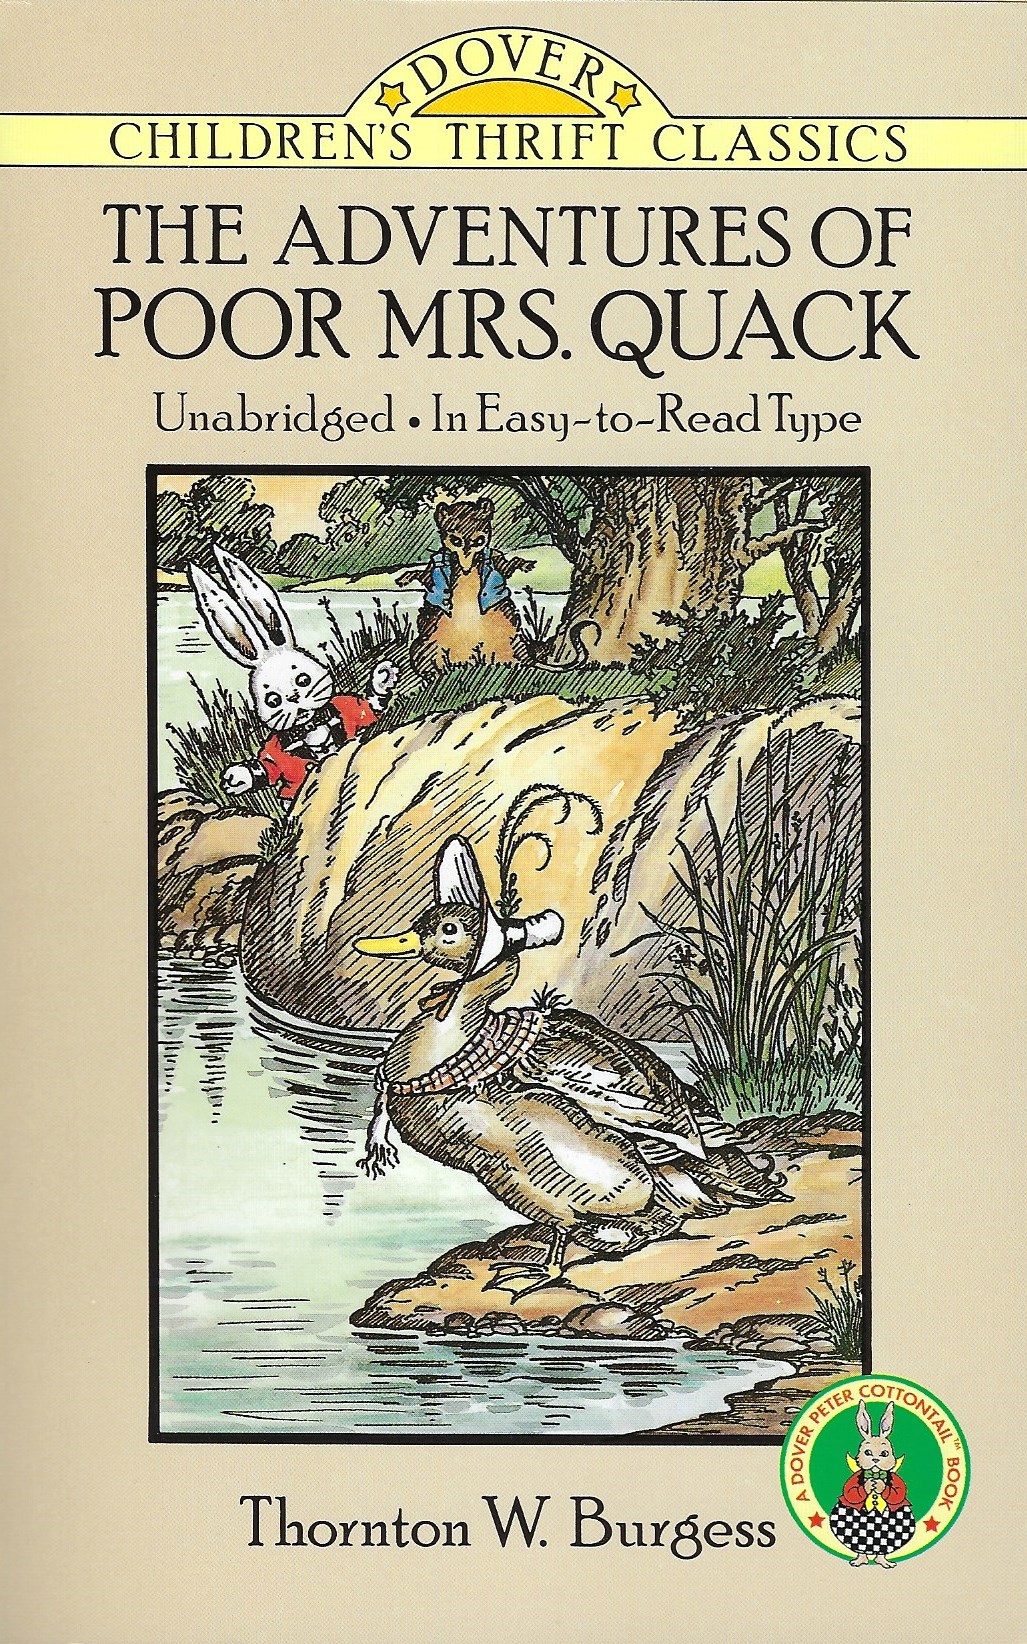 THE ADVENTURES OF POOR MRS. QUACK Thornton W. Burgess